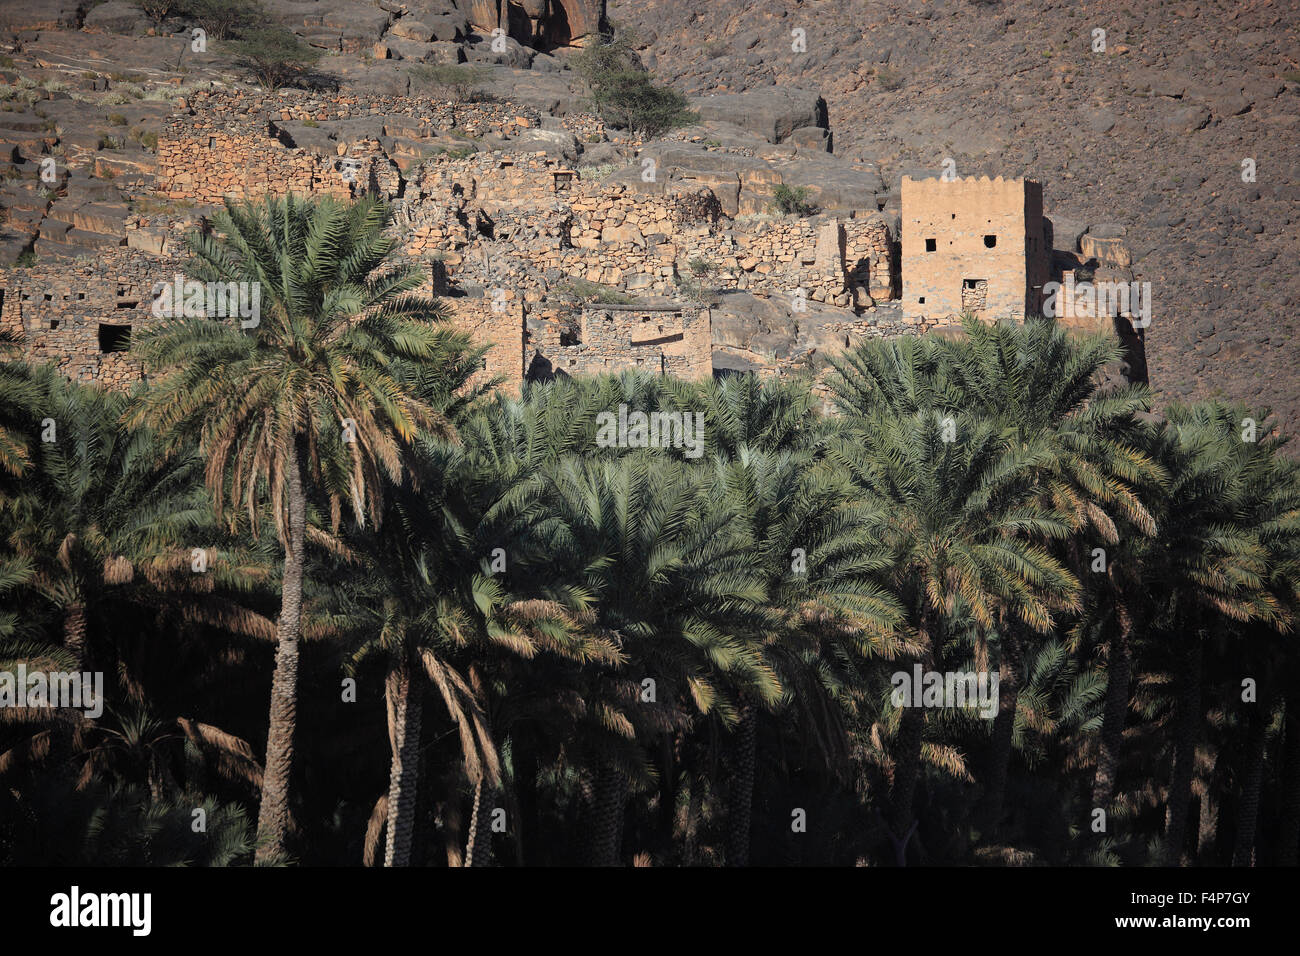 Casas desoladas del asentamiento histórico ghoul en el Jebel Shams, Omán Foto de stock